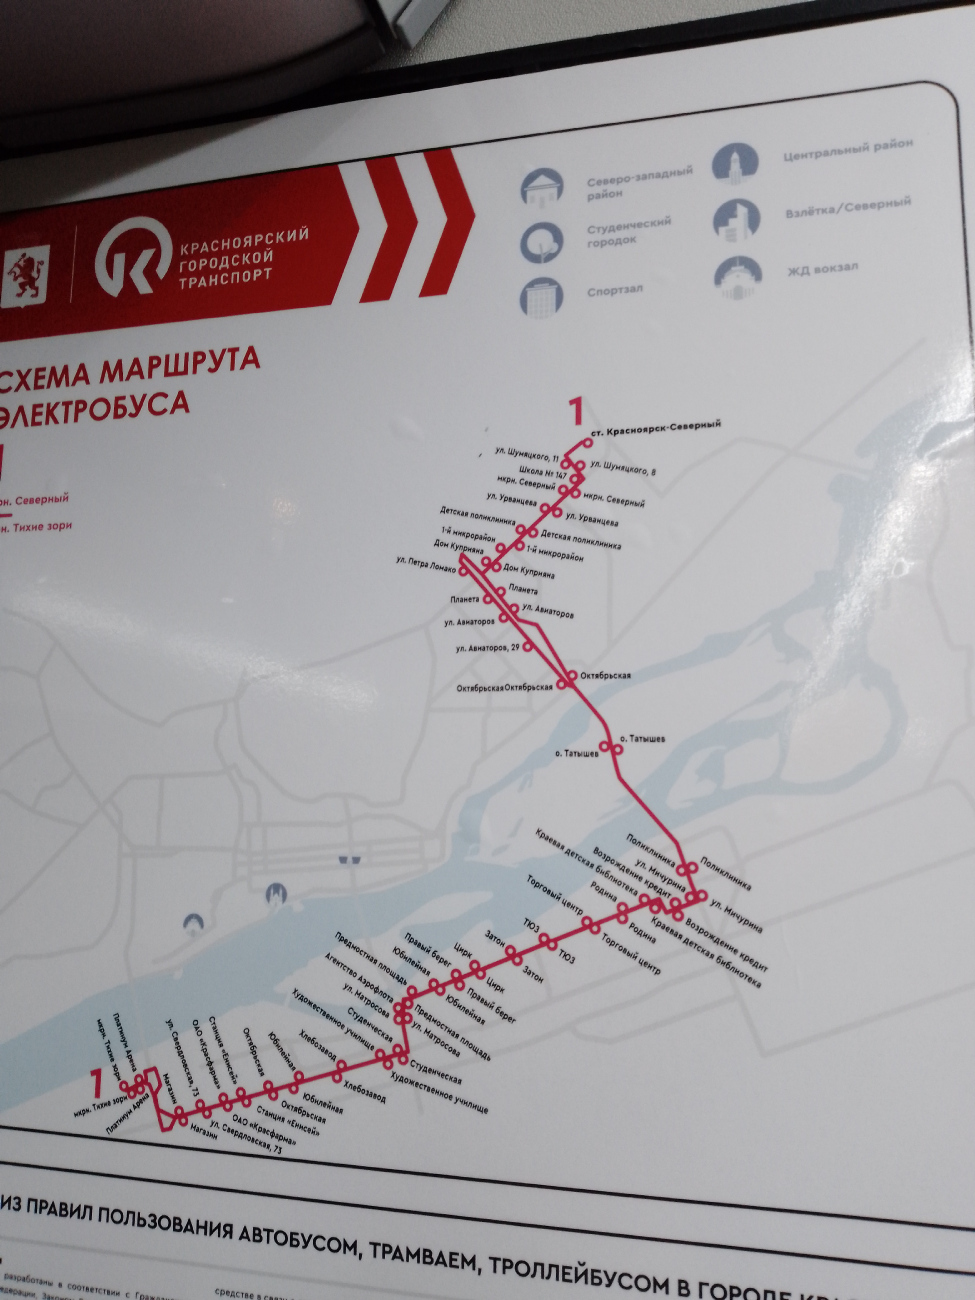 Krasznojarszk — Maps